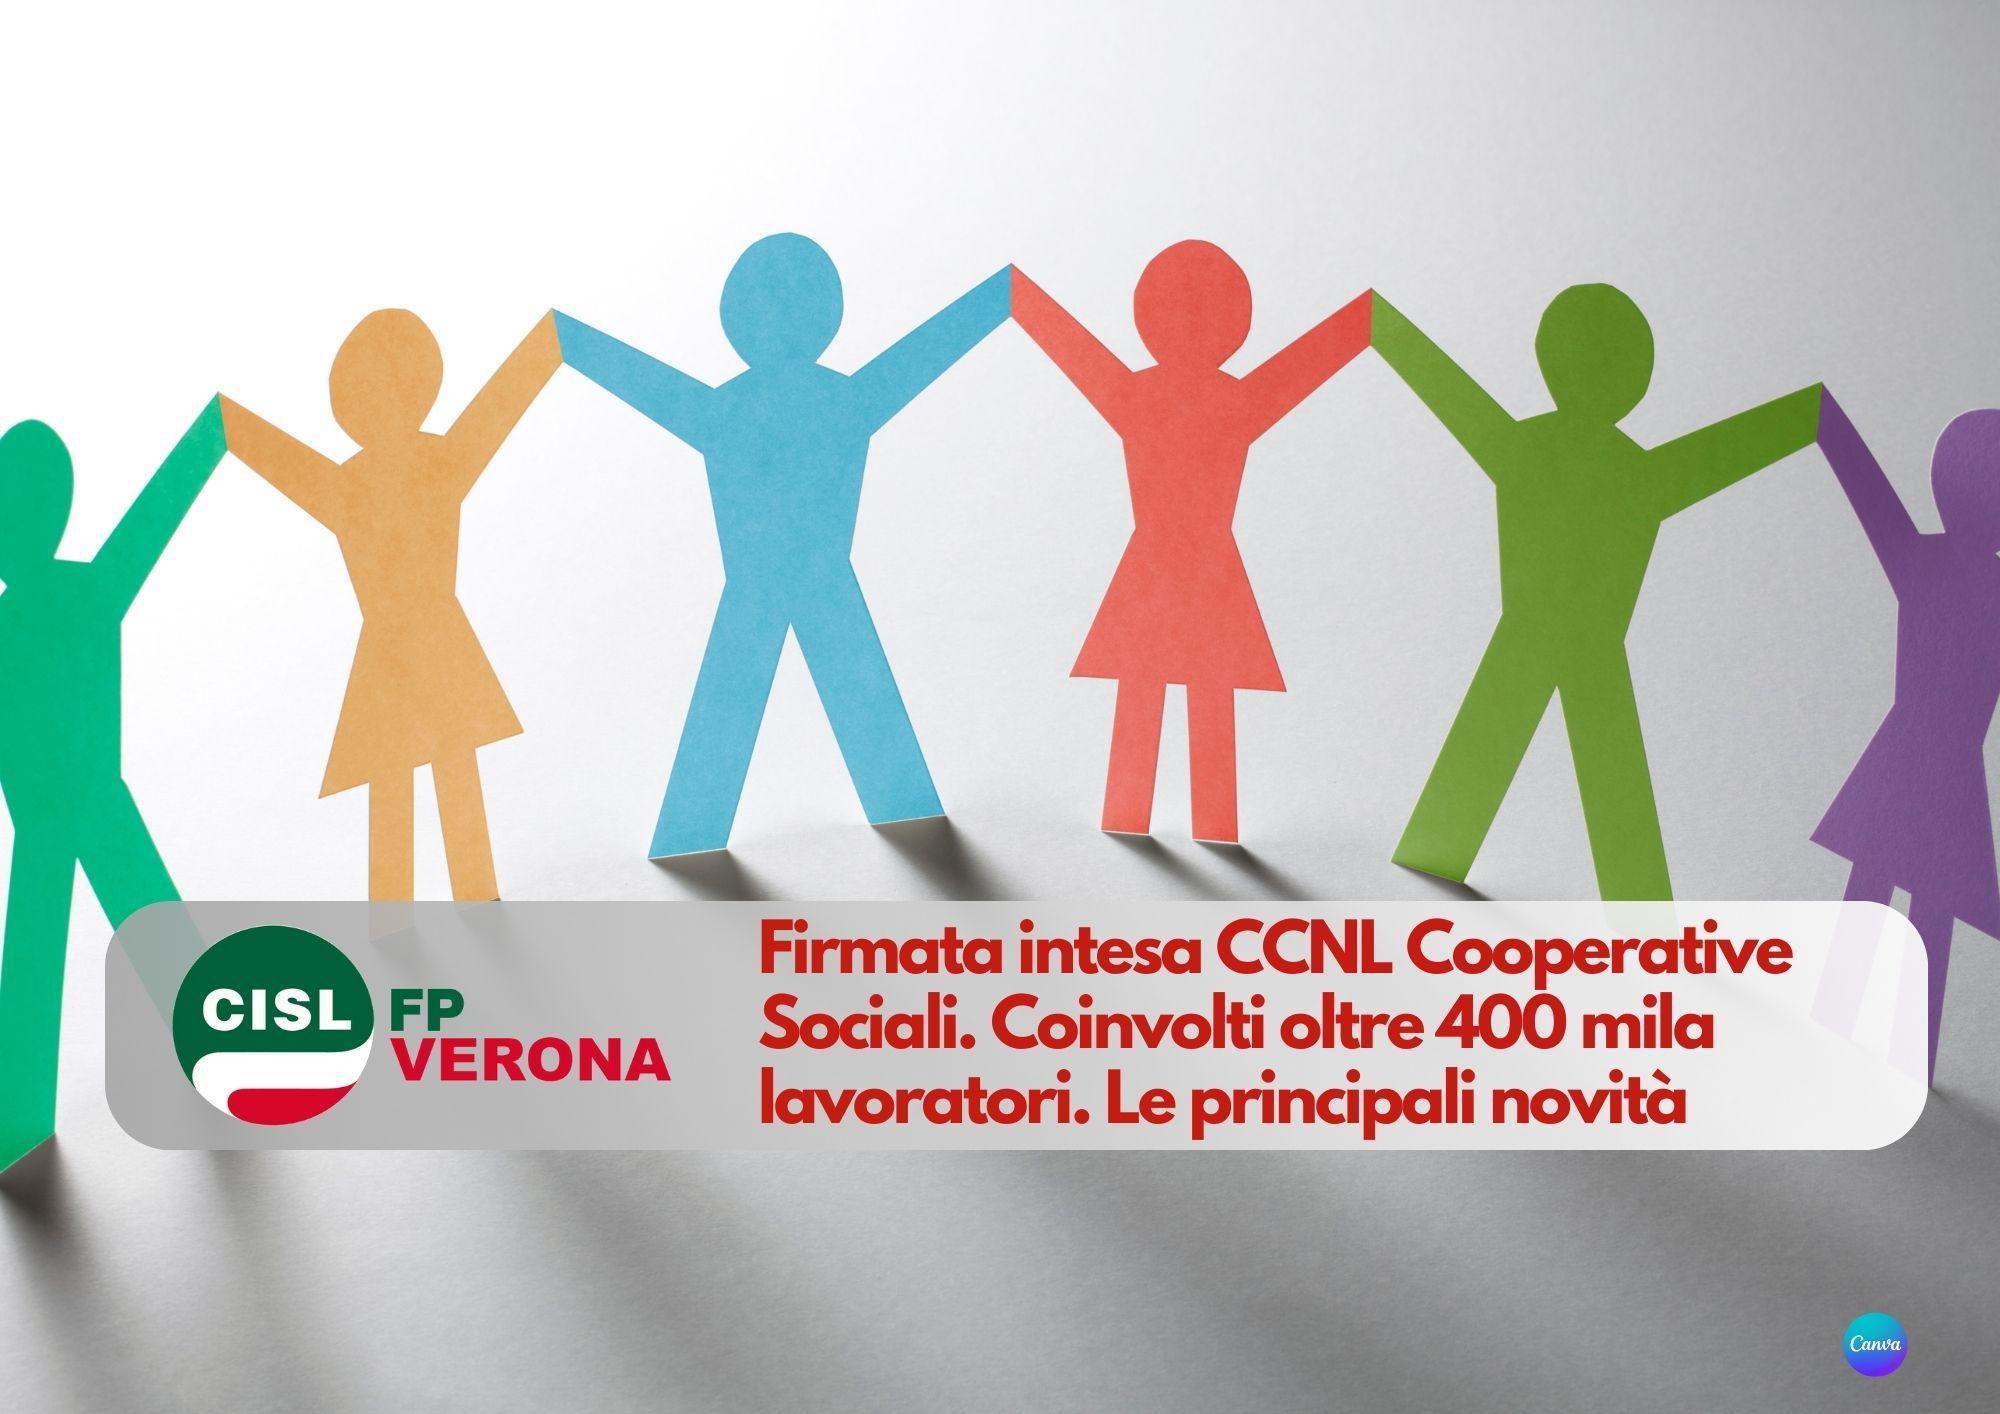 CISL FP Verona. Firmata intesa CCNL Cooperative Sociali. Coinvolti oltre 400 mila lavoratori. Le novità